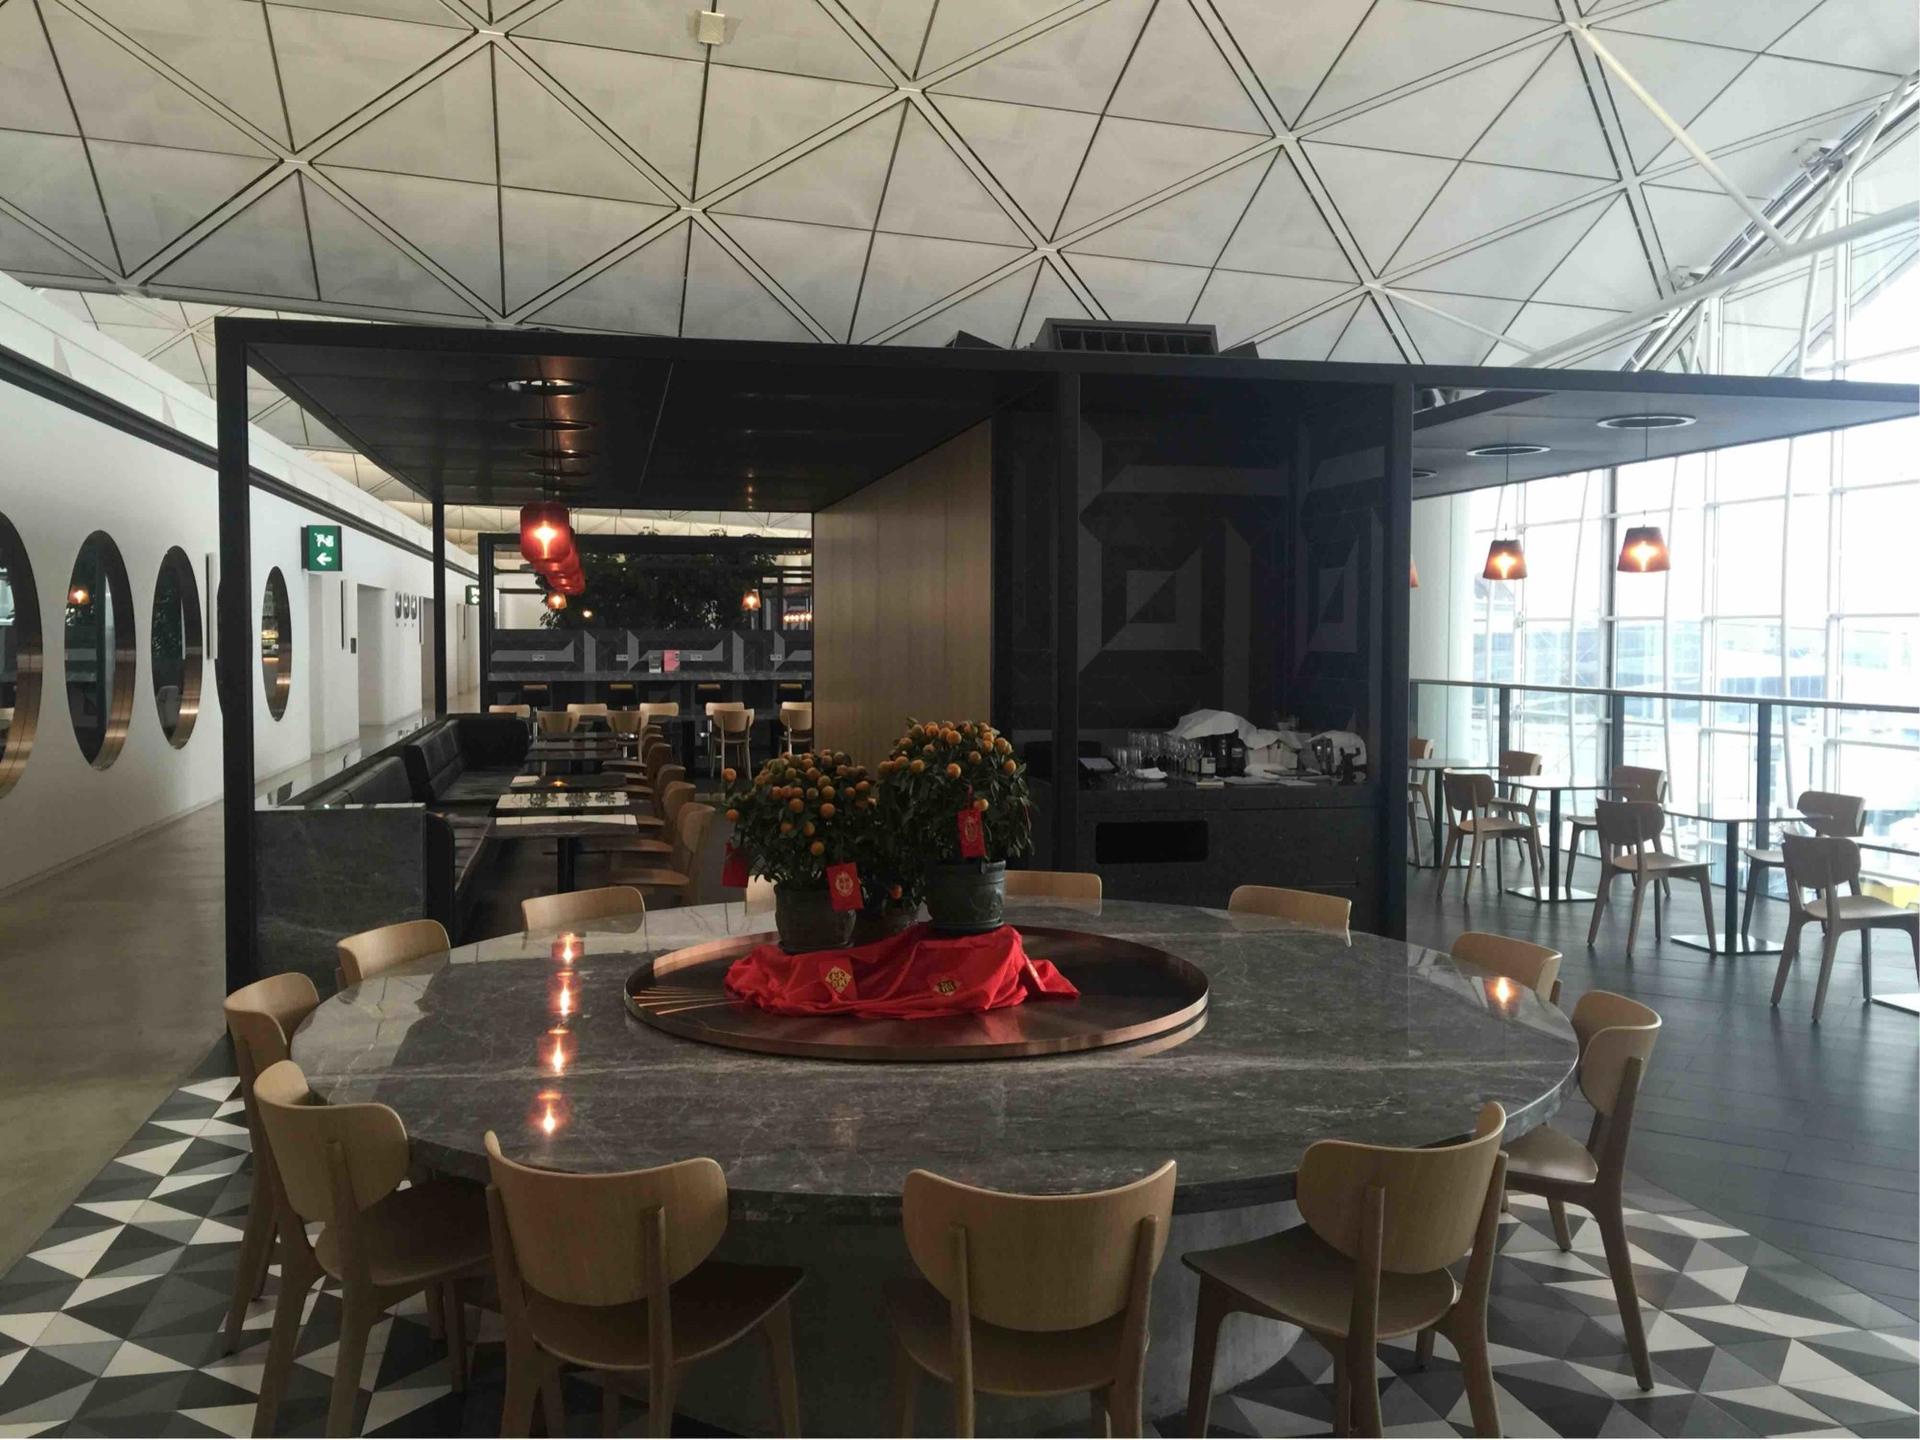 The Qantas Hong Kong Lounge image 26 of 99